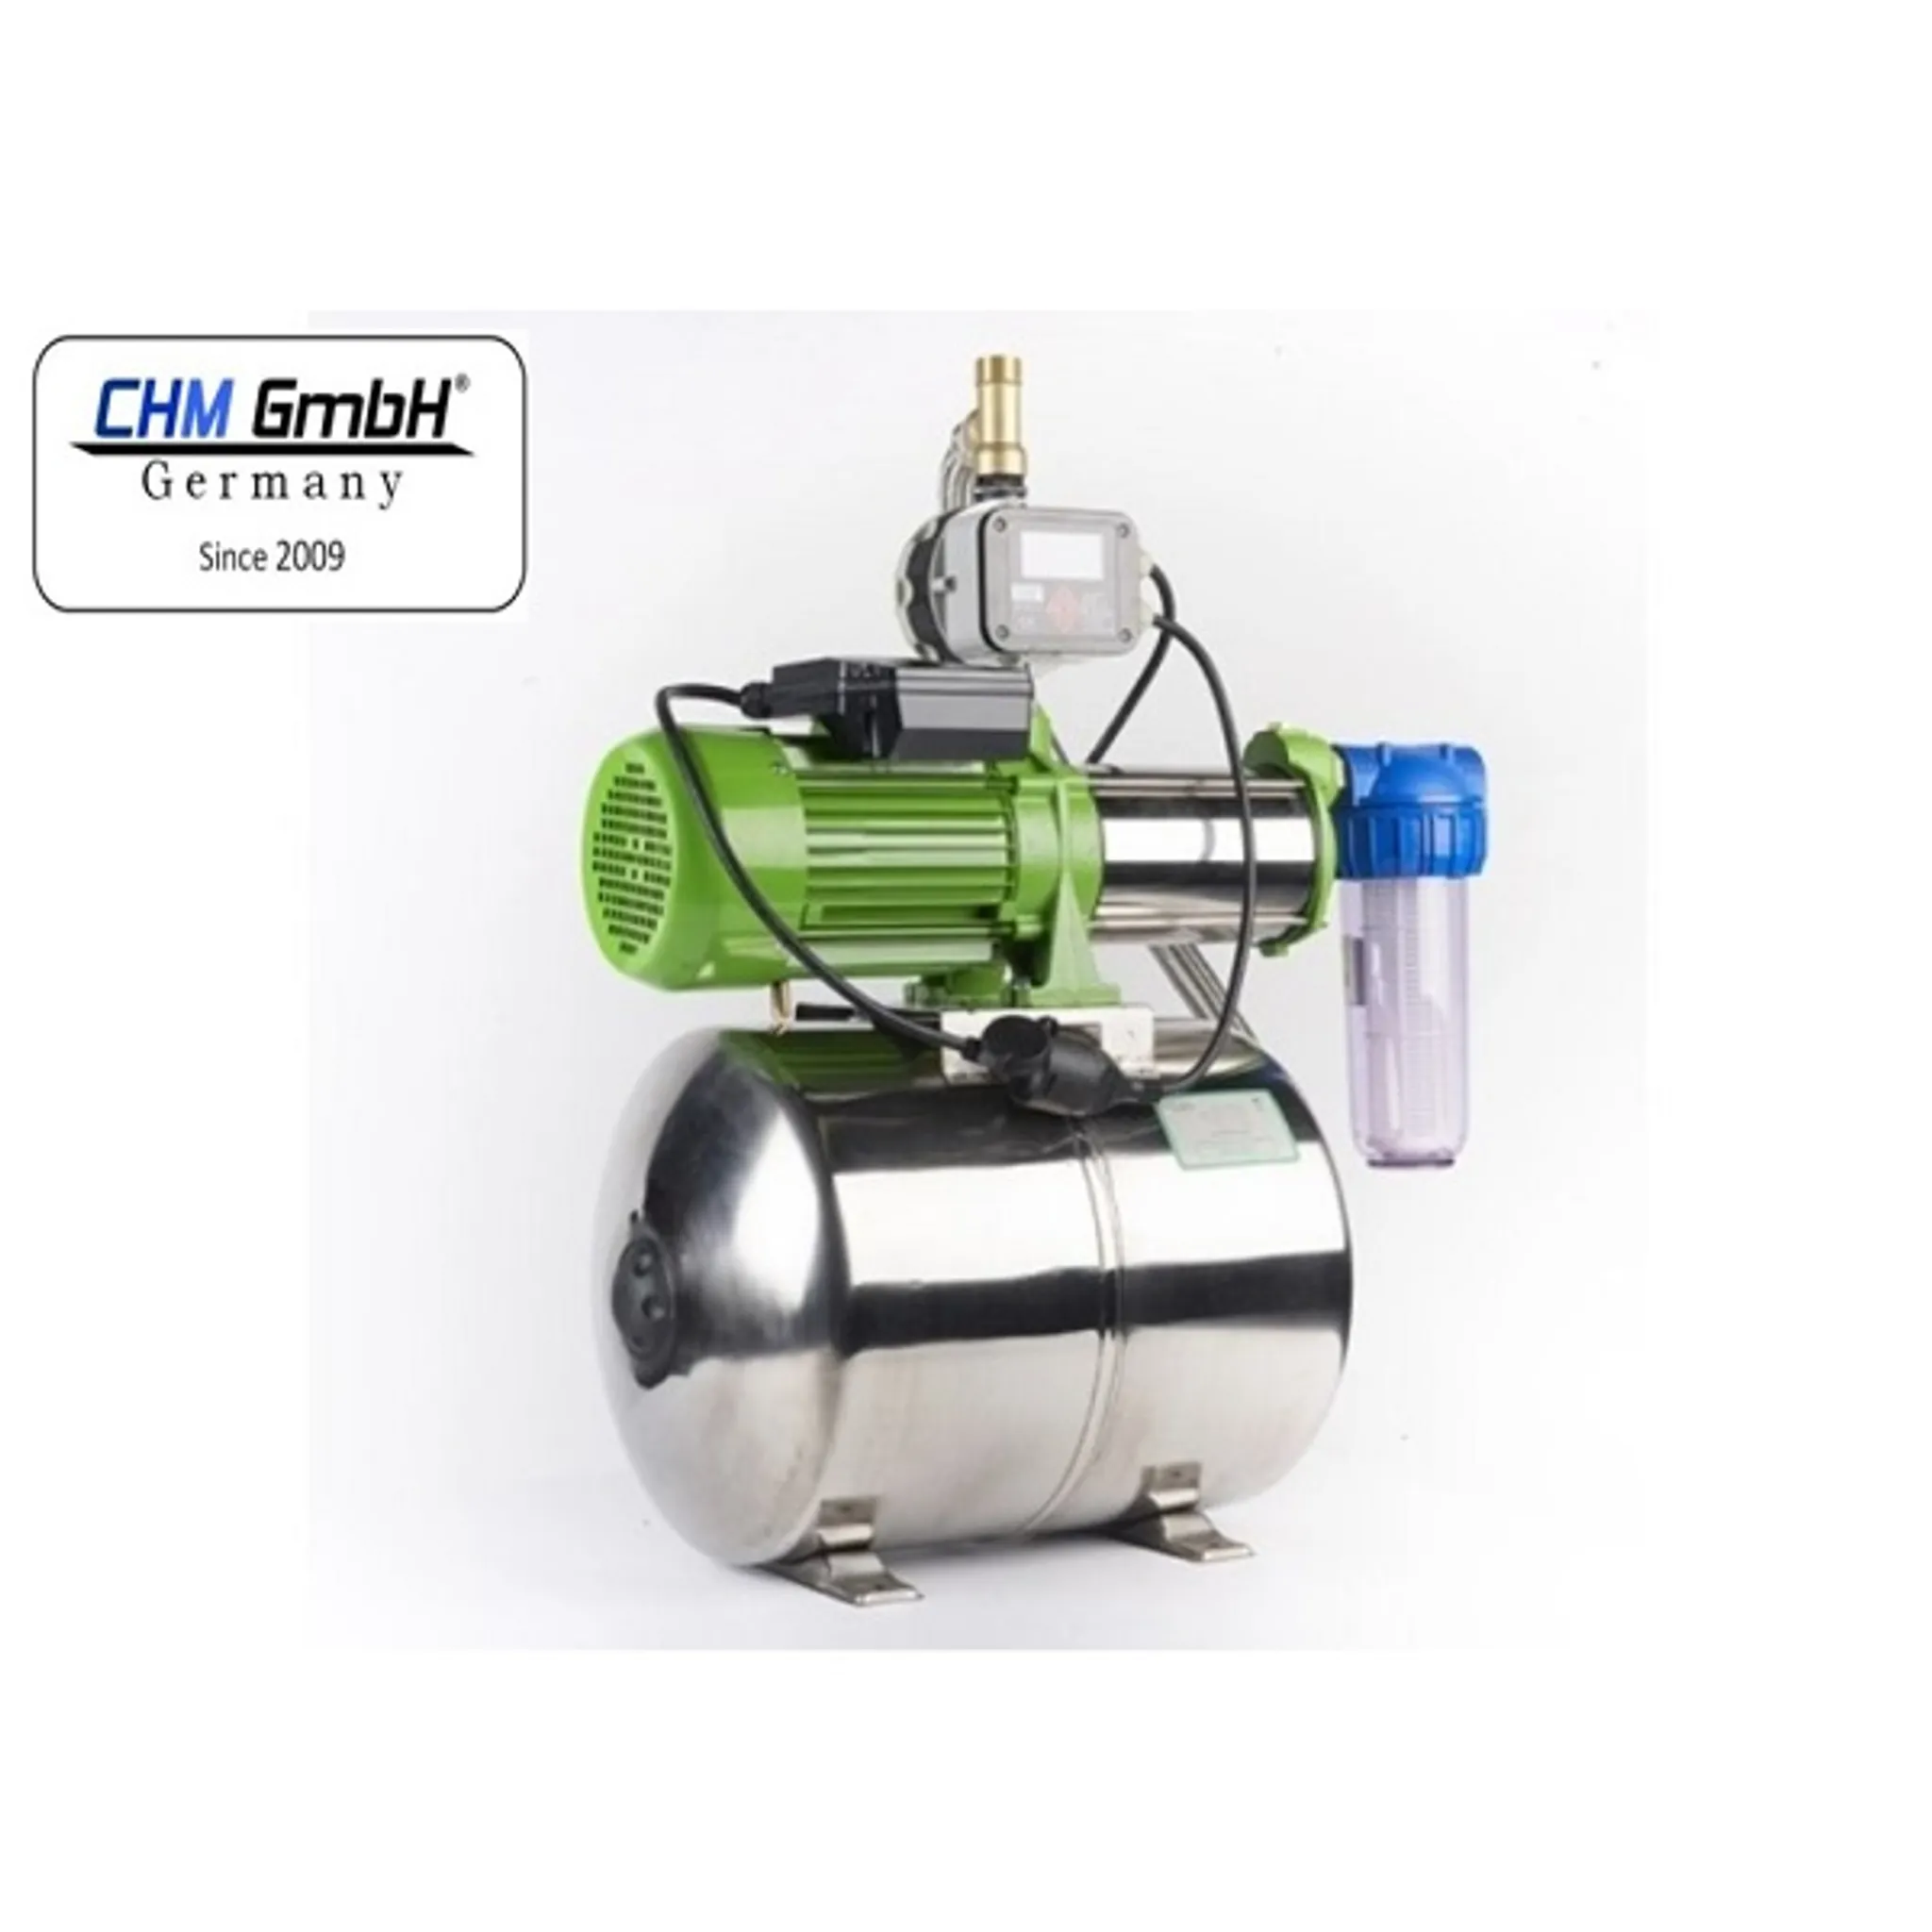 CHM GmbH® Hauswasserwerk 50 Liter, Watt 1100